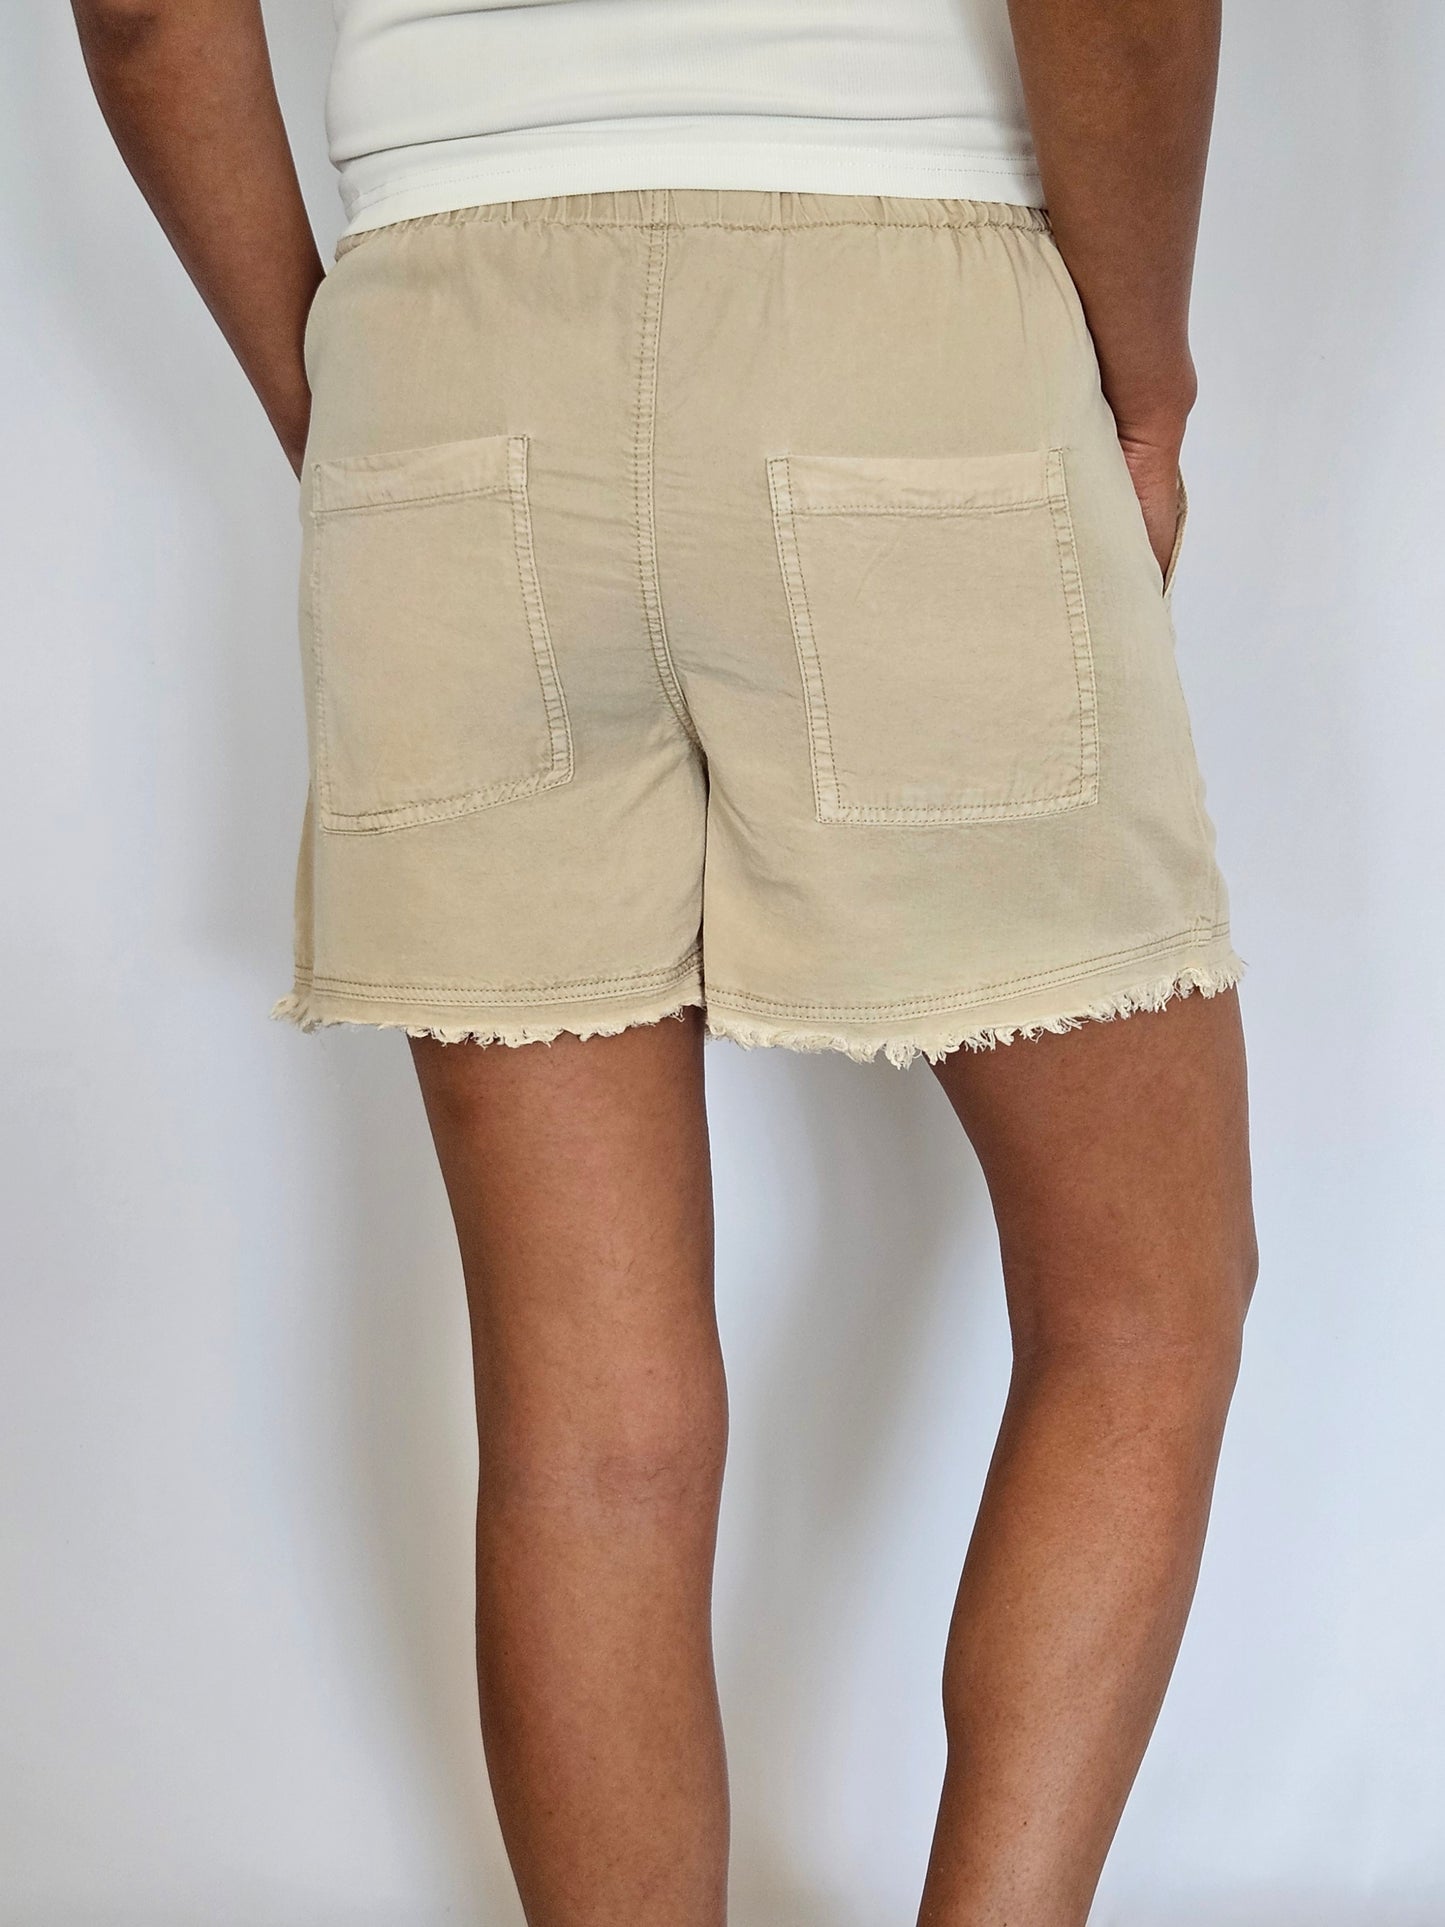 Desert Sand Drawstring Shorts